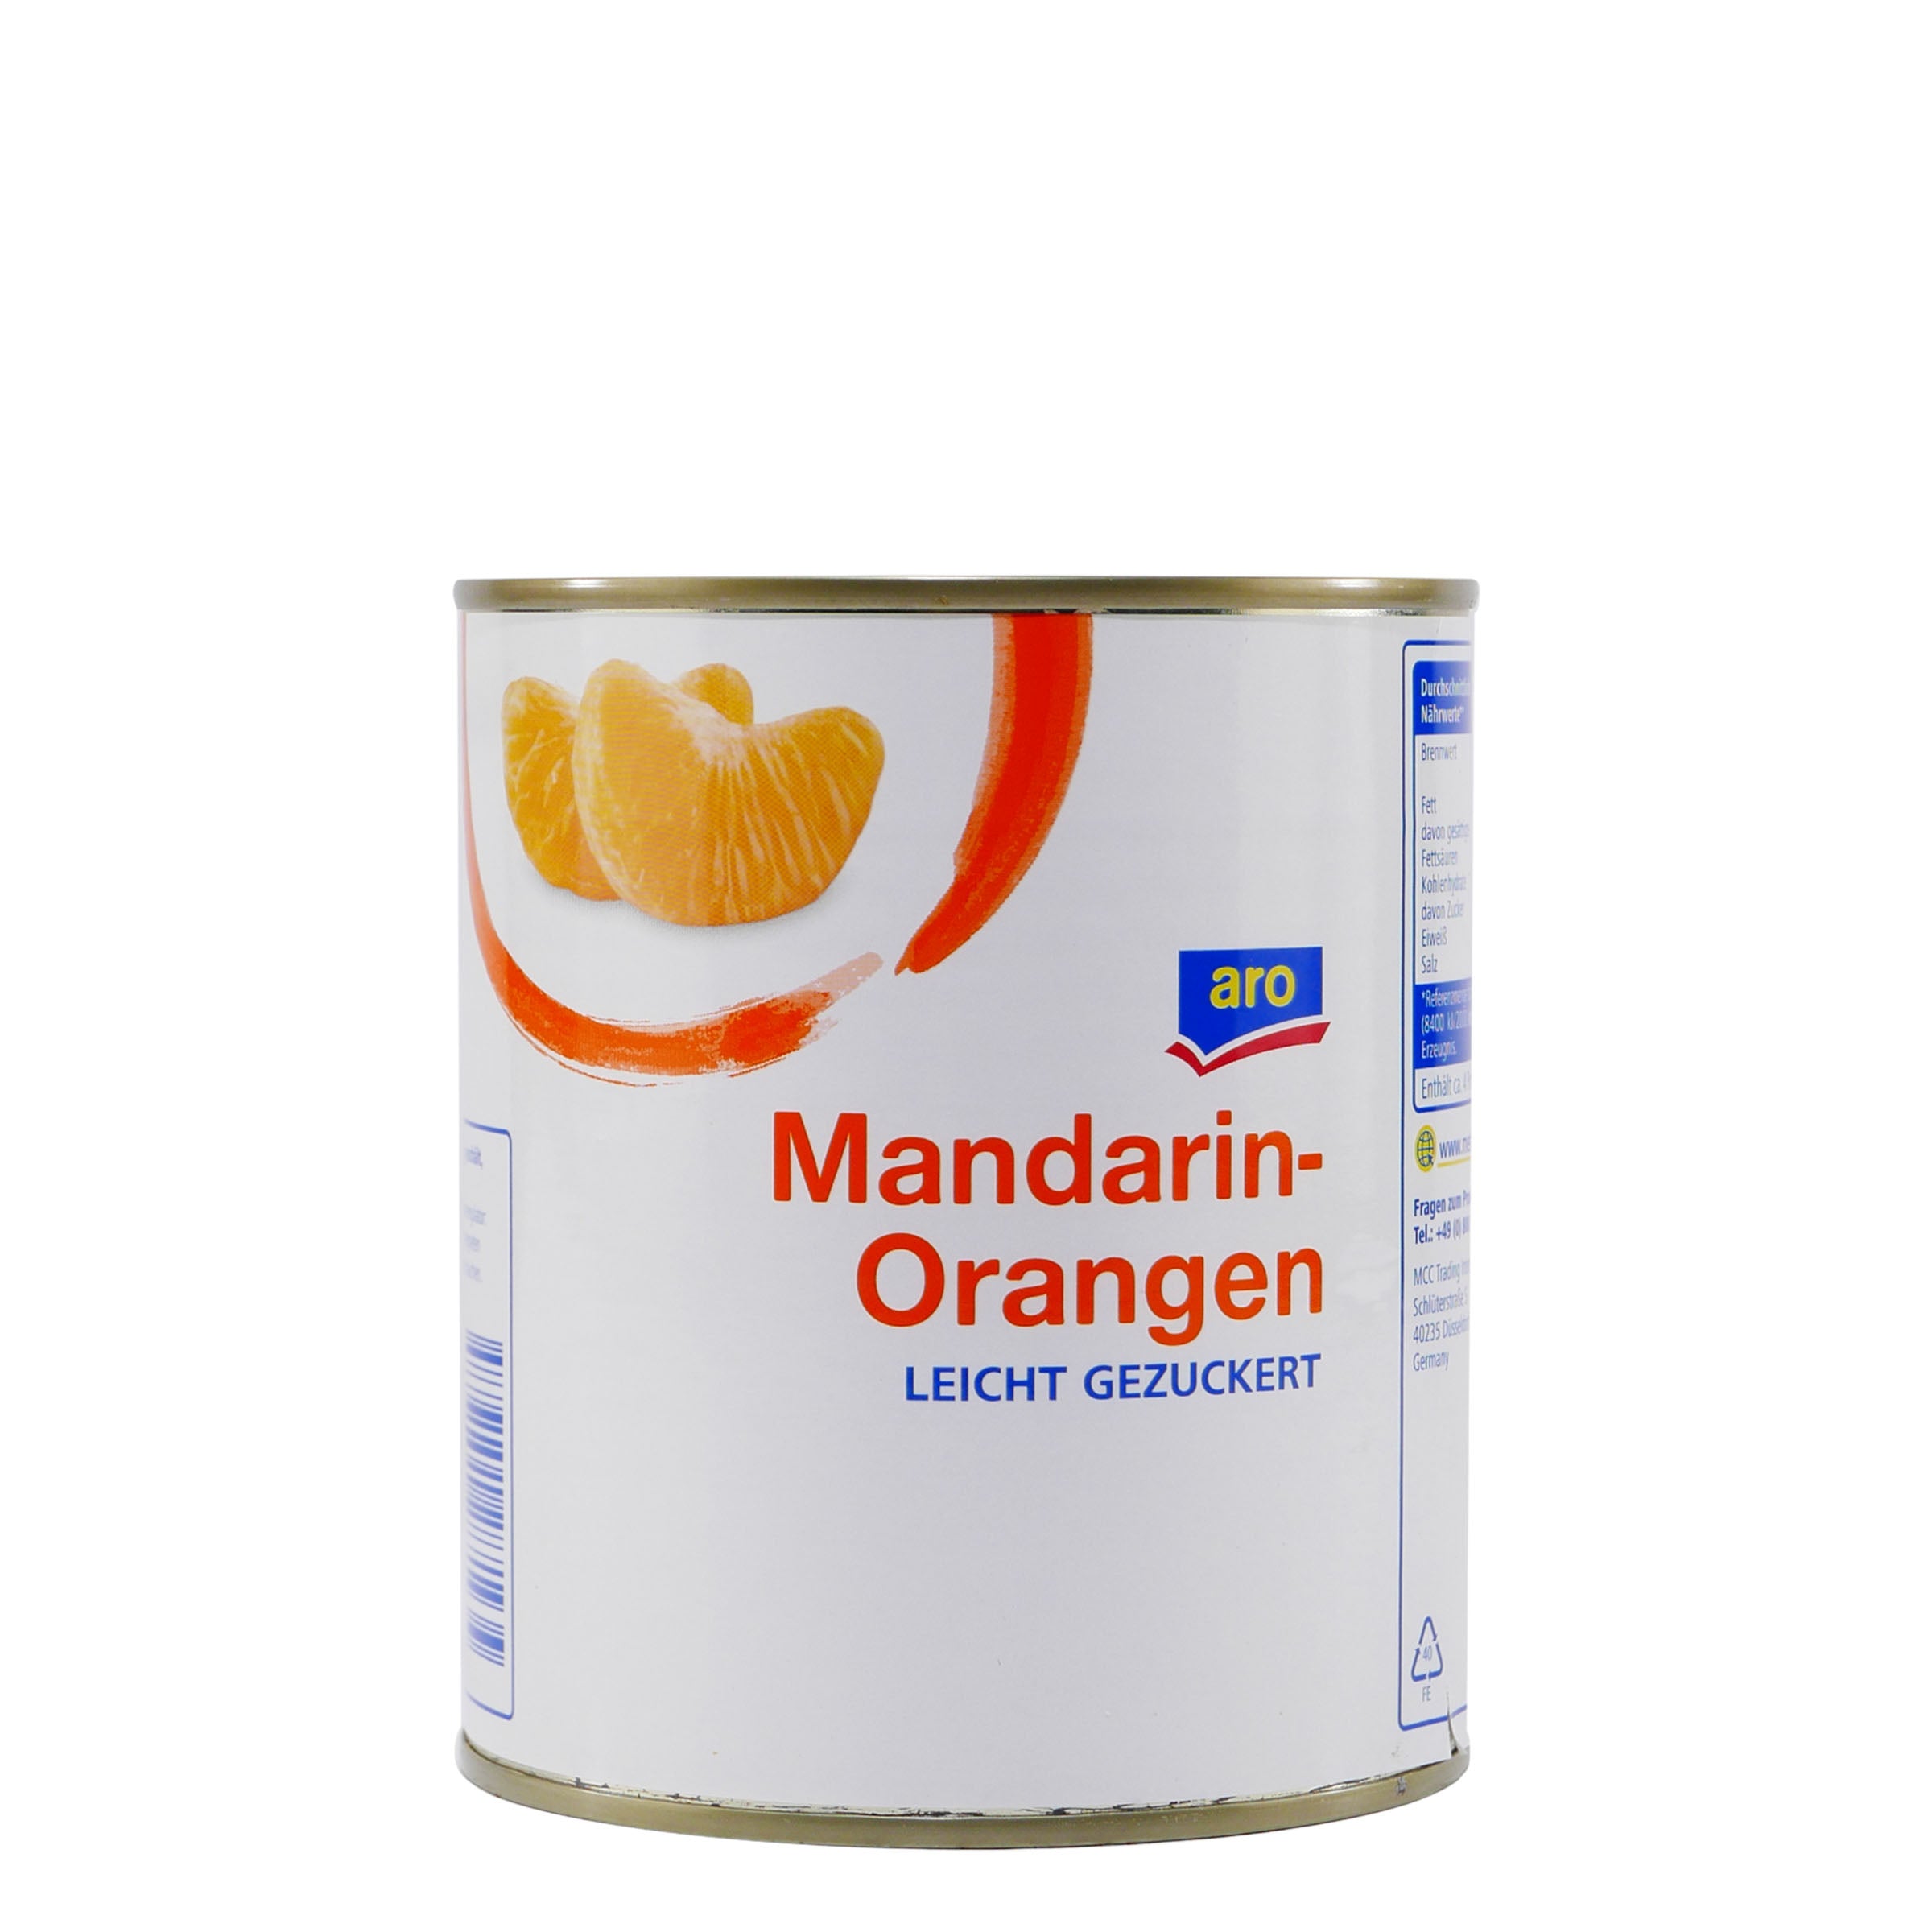 aro Mandarin-Orangen (6 x 820g)